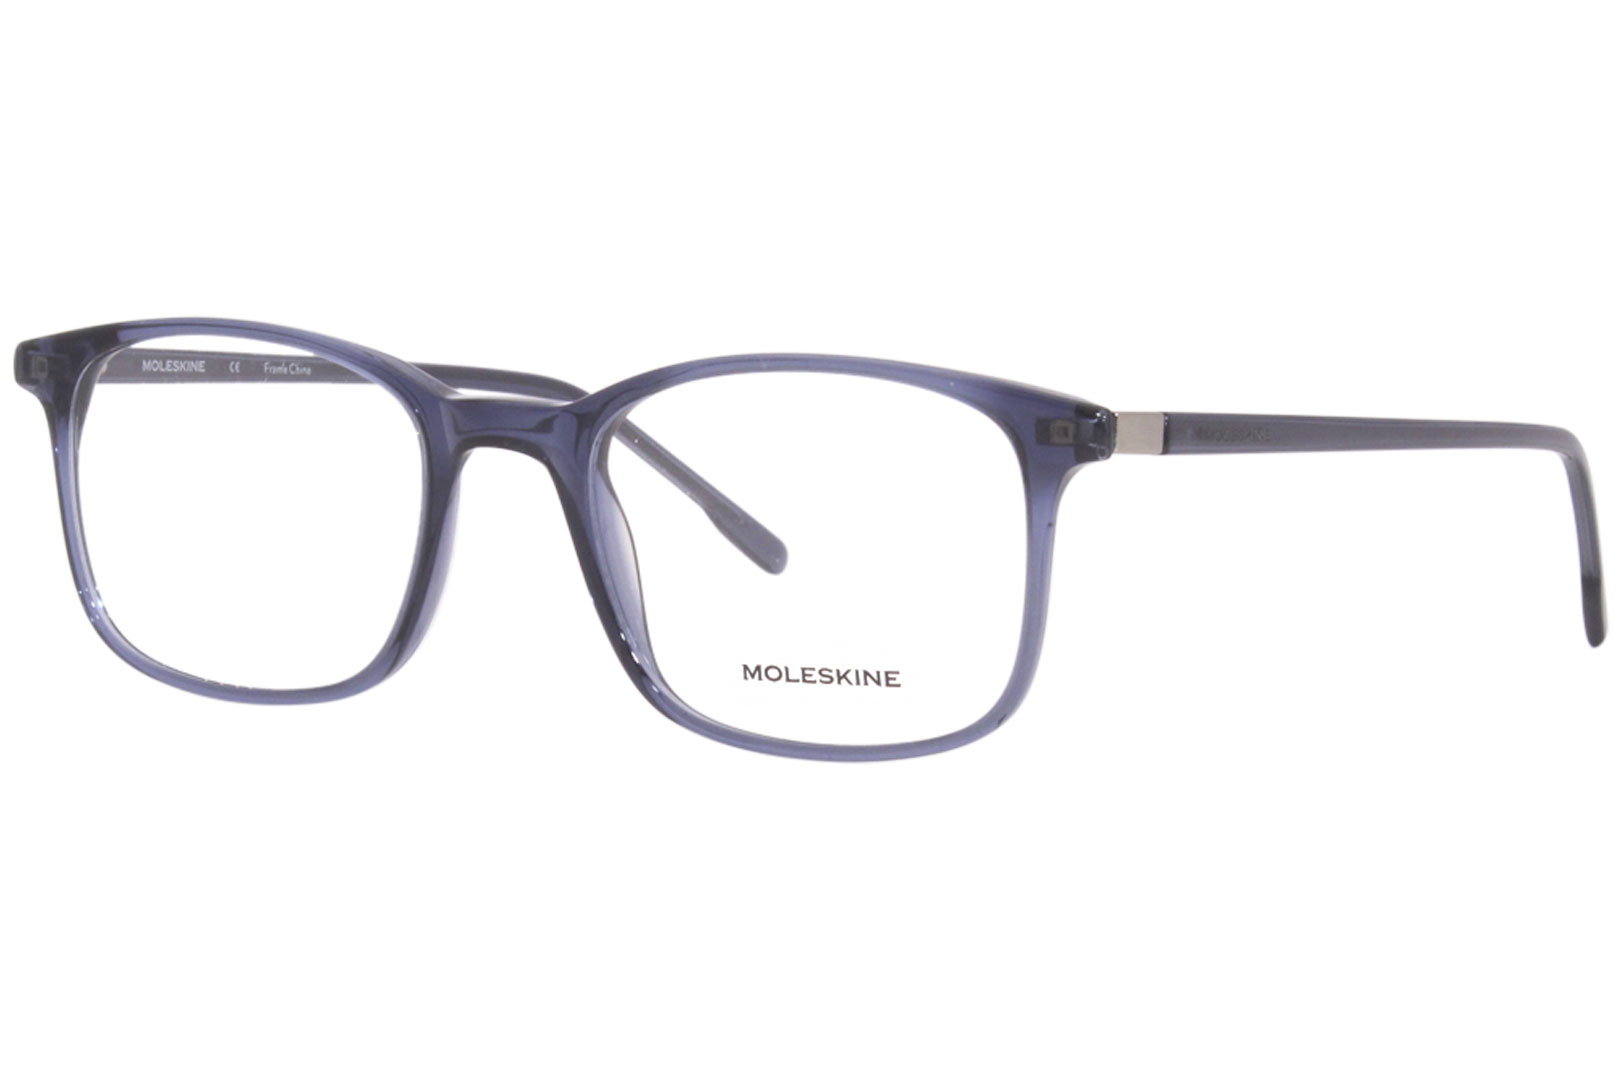 Moleskine MO1158 Eyeglasses Men's Full Rim Rectangle Shape | EyeSpecs.com